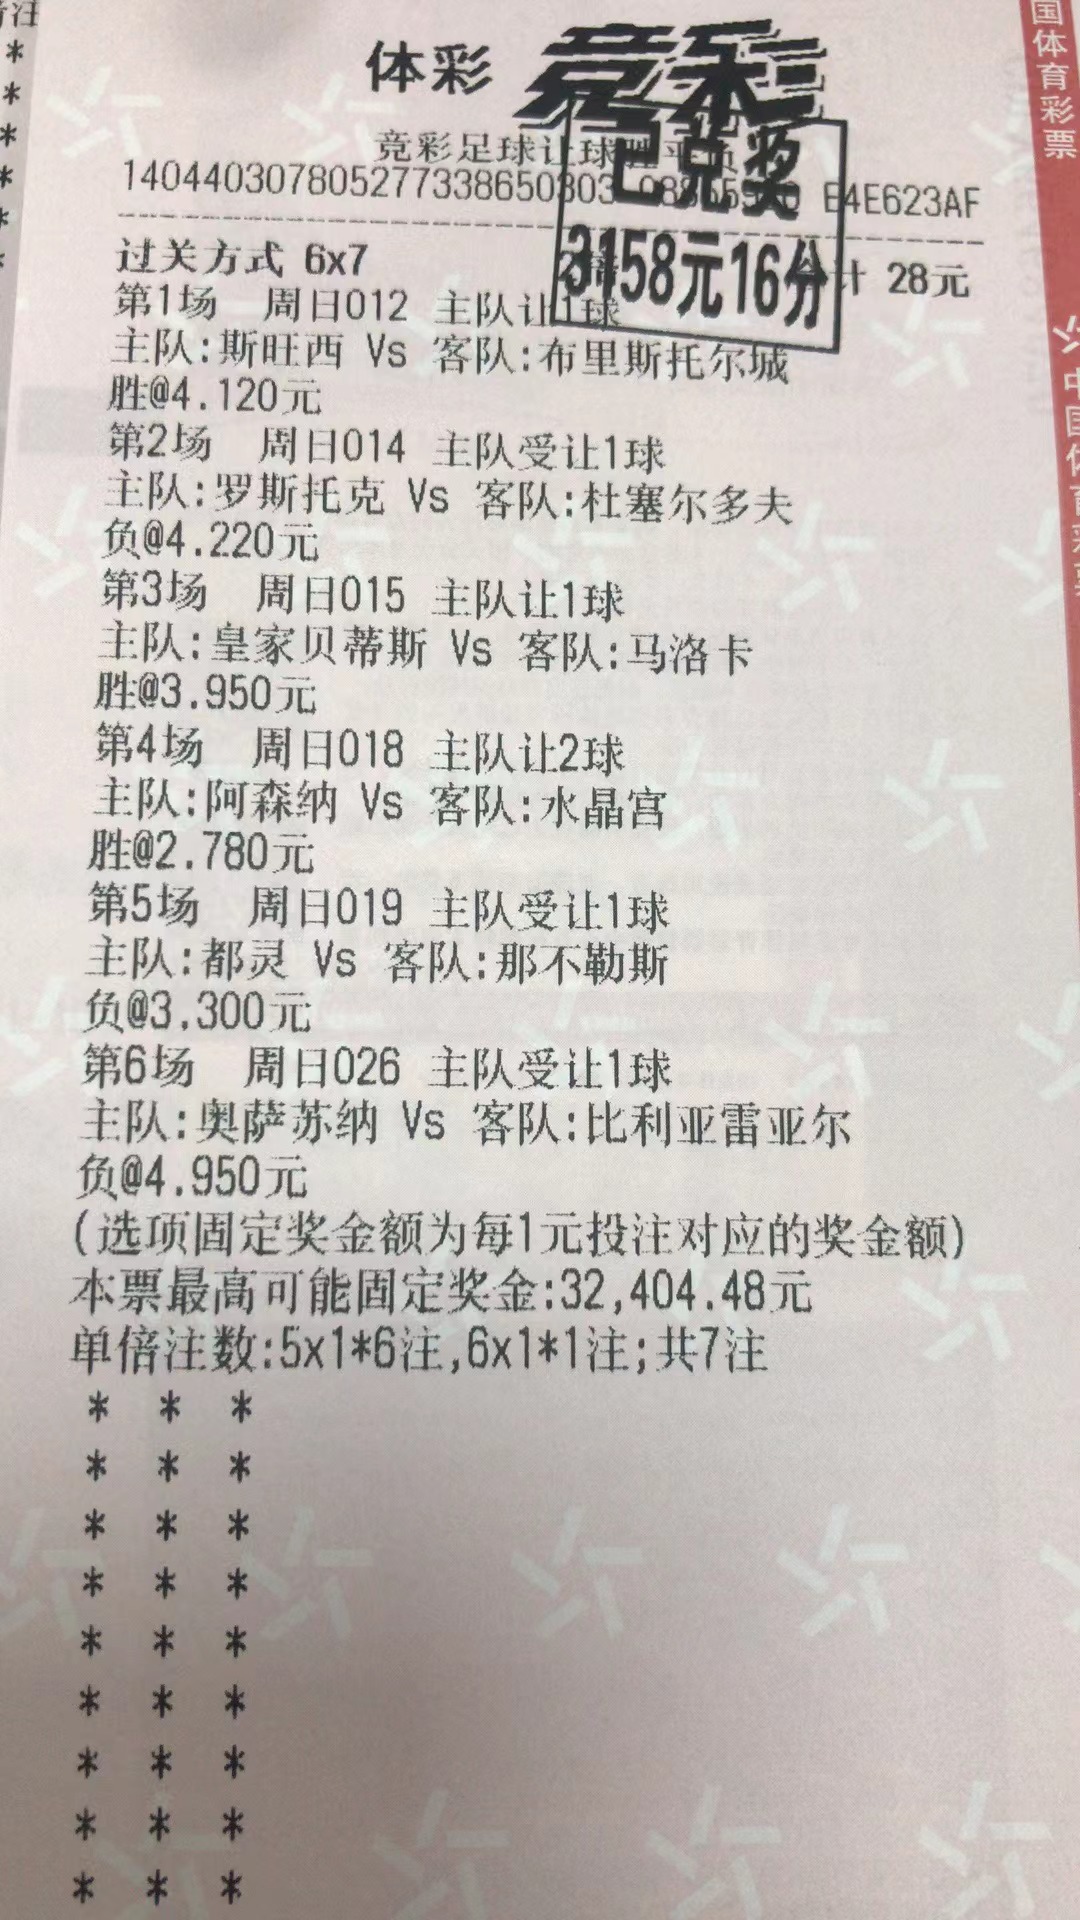 3月20日胜平负收米3158元-北单实体店